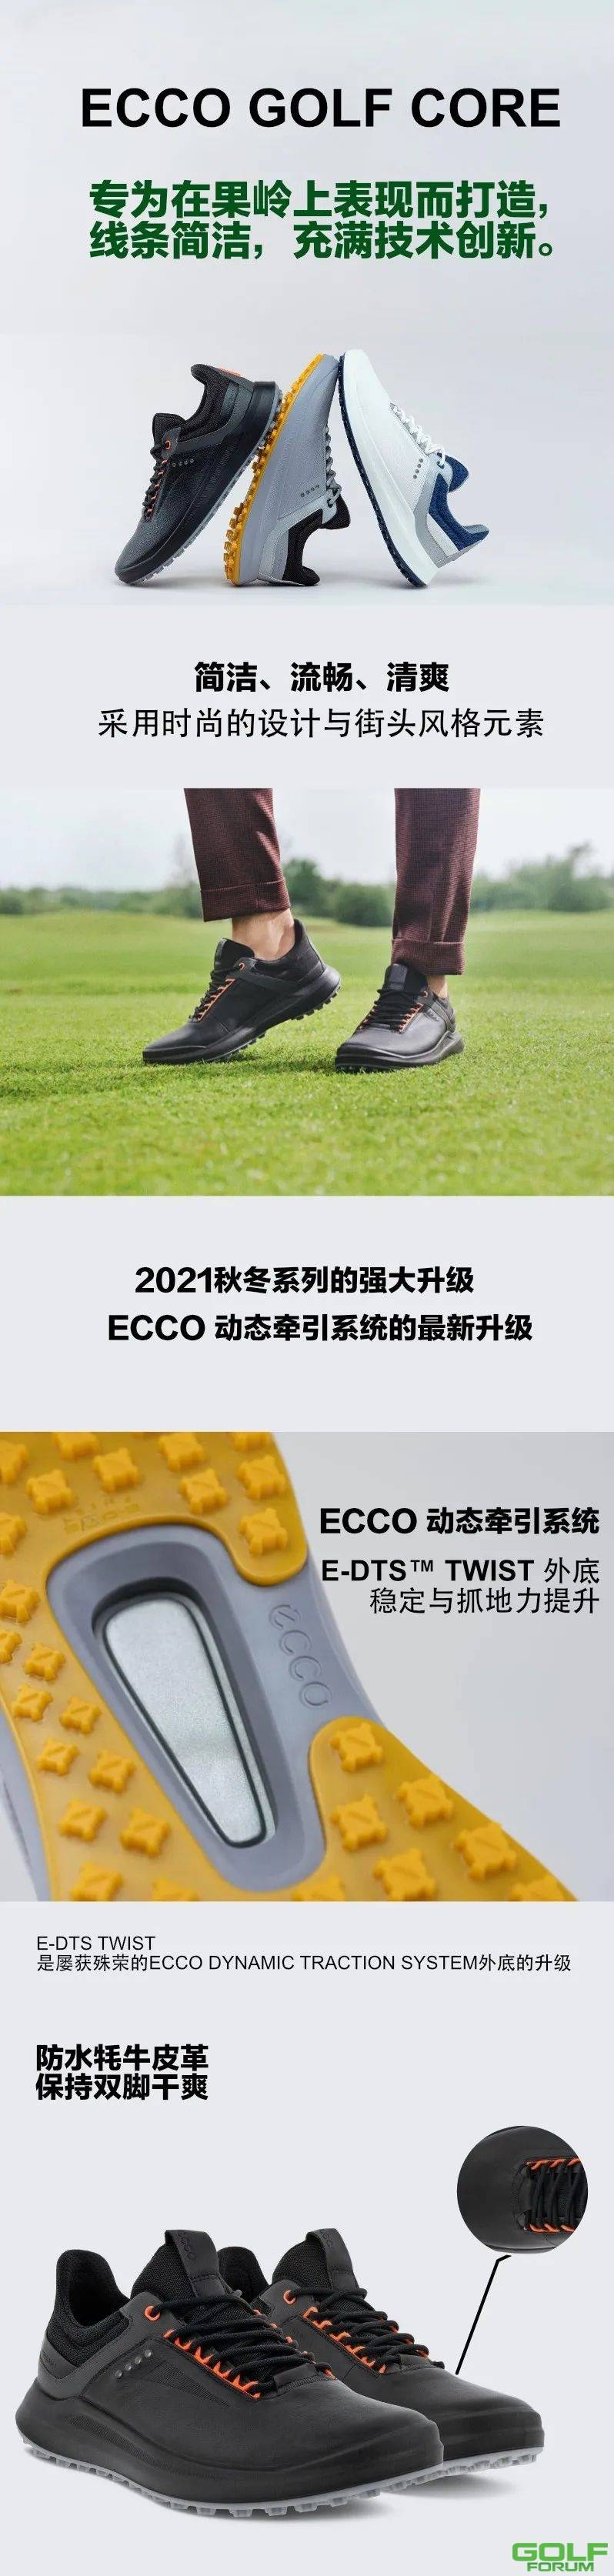 「ECCO新品特卖」1799元起，男子高尔夫CORE球鞋2021秋冬新品 ...